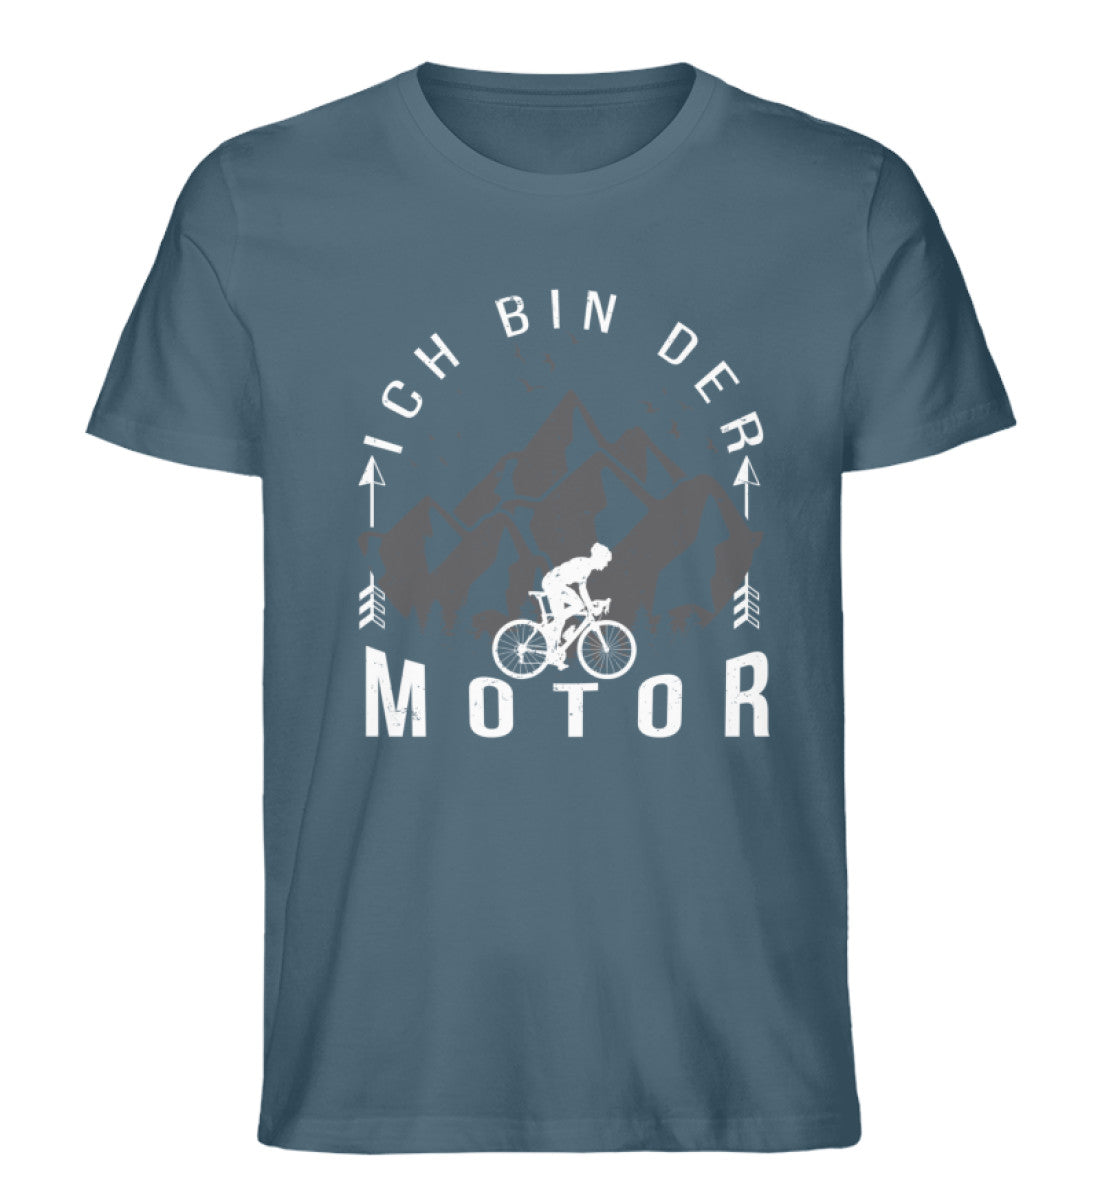 Ich Bin Der Motor - Herren Premium Organic T-Shirt fahrrad mountainbike Stargazer